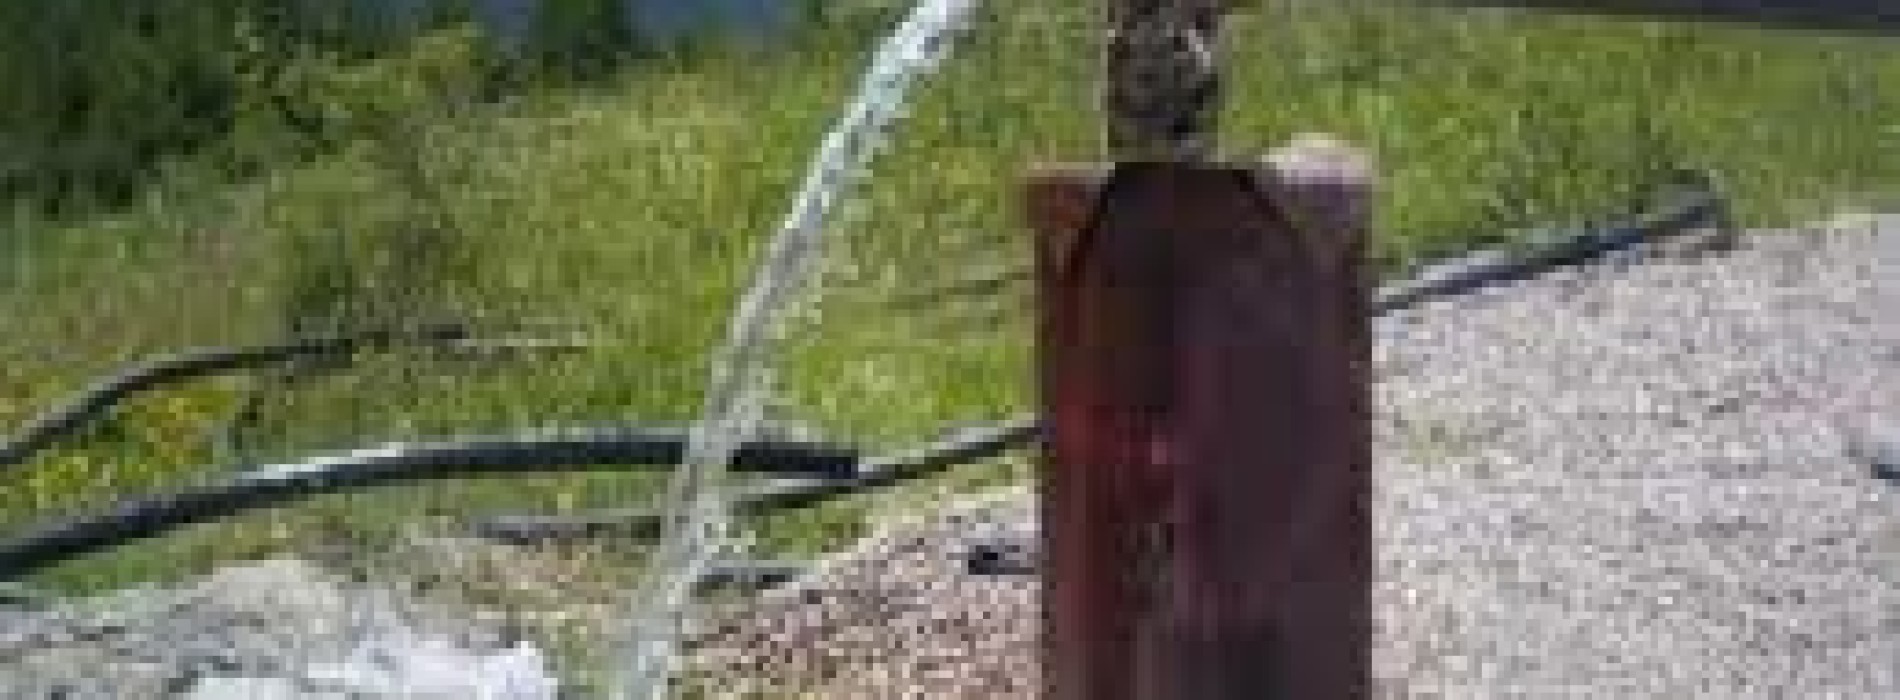 Госпрограмма «Питьевая вода» не сорвана, считают в акимате Костанайской области